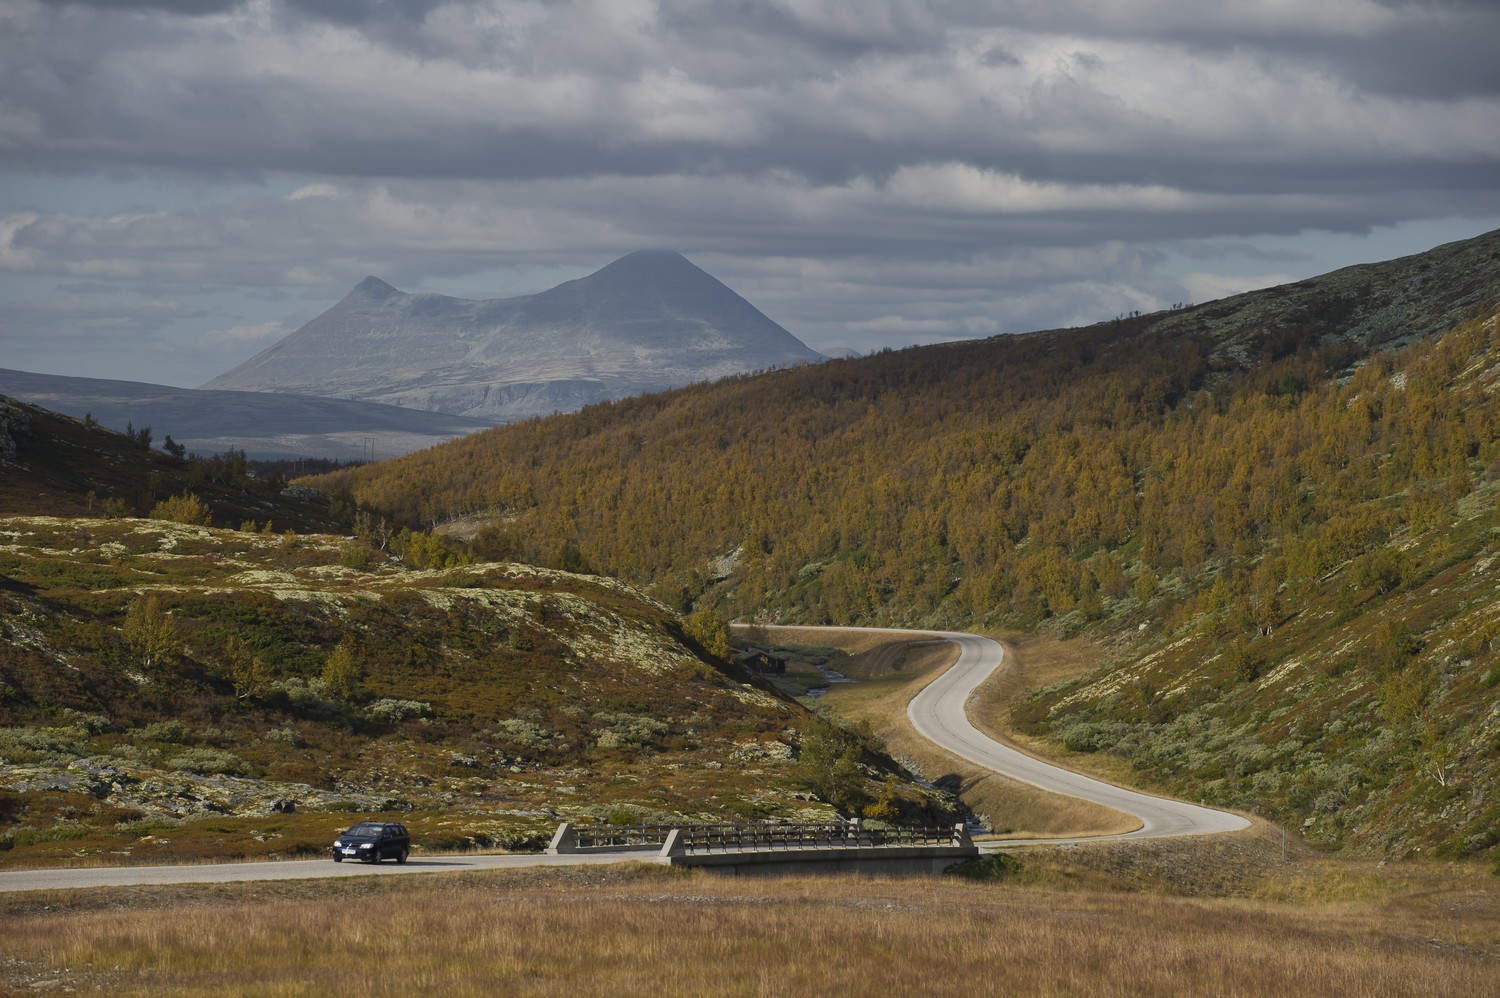 Rijden in Noorwegen gaat niet al te vlot, maar dit wordt ruimschoots gecompenseerd door de omgeving!